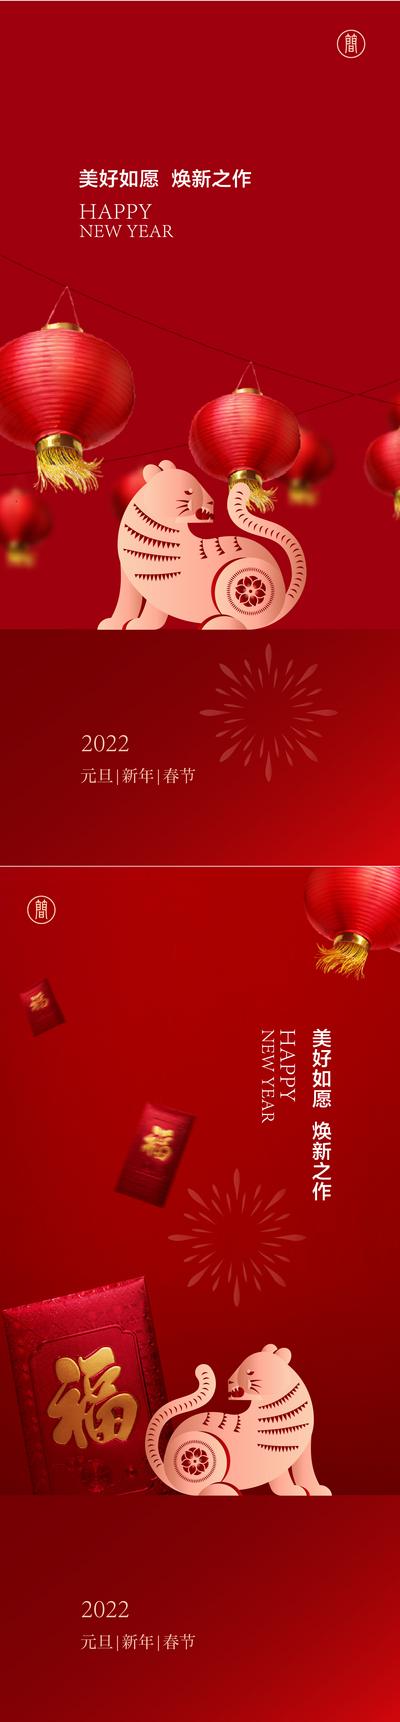 南门网 海报 房地产 公历节日 元旦 新年 虎年 2022 灯笼 红包